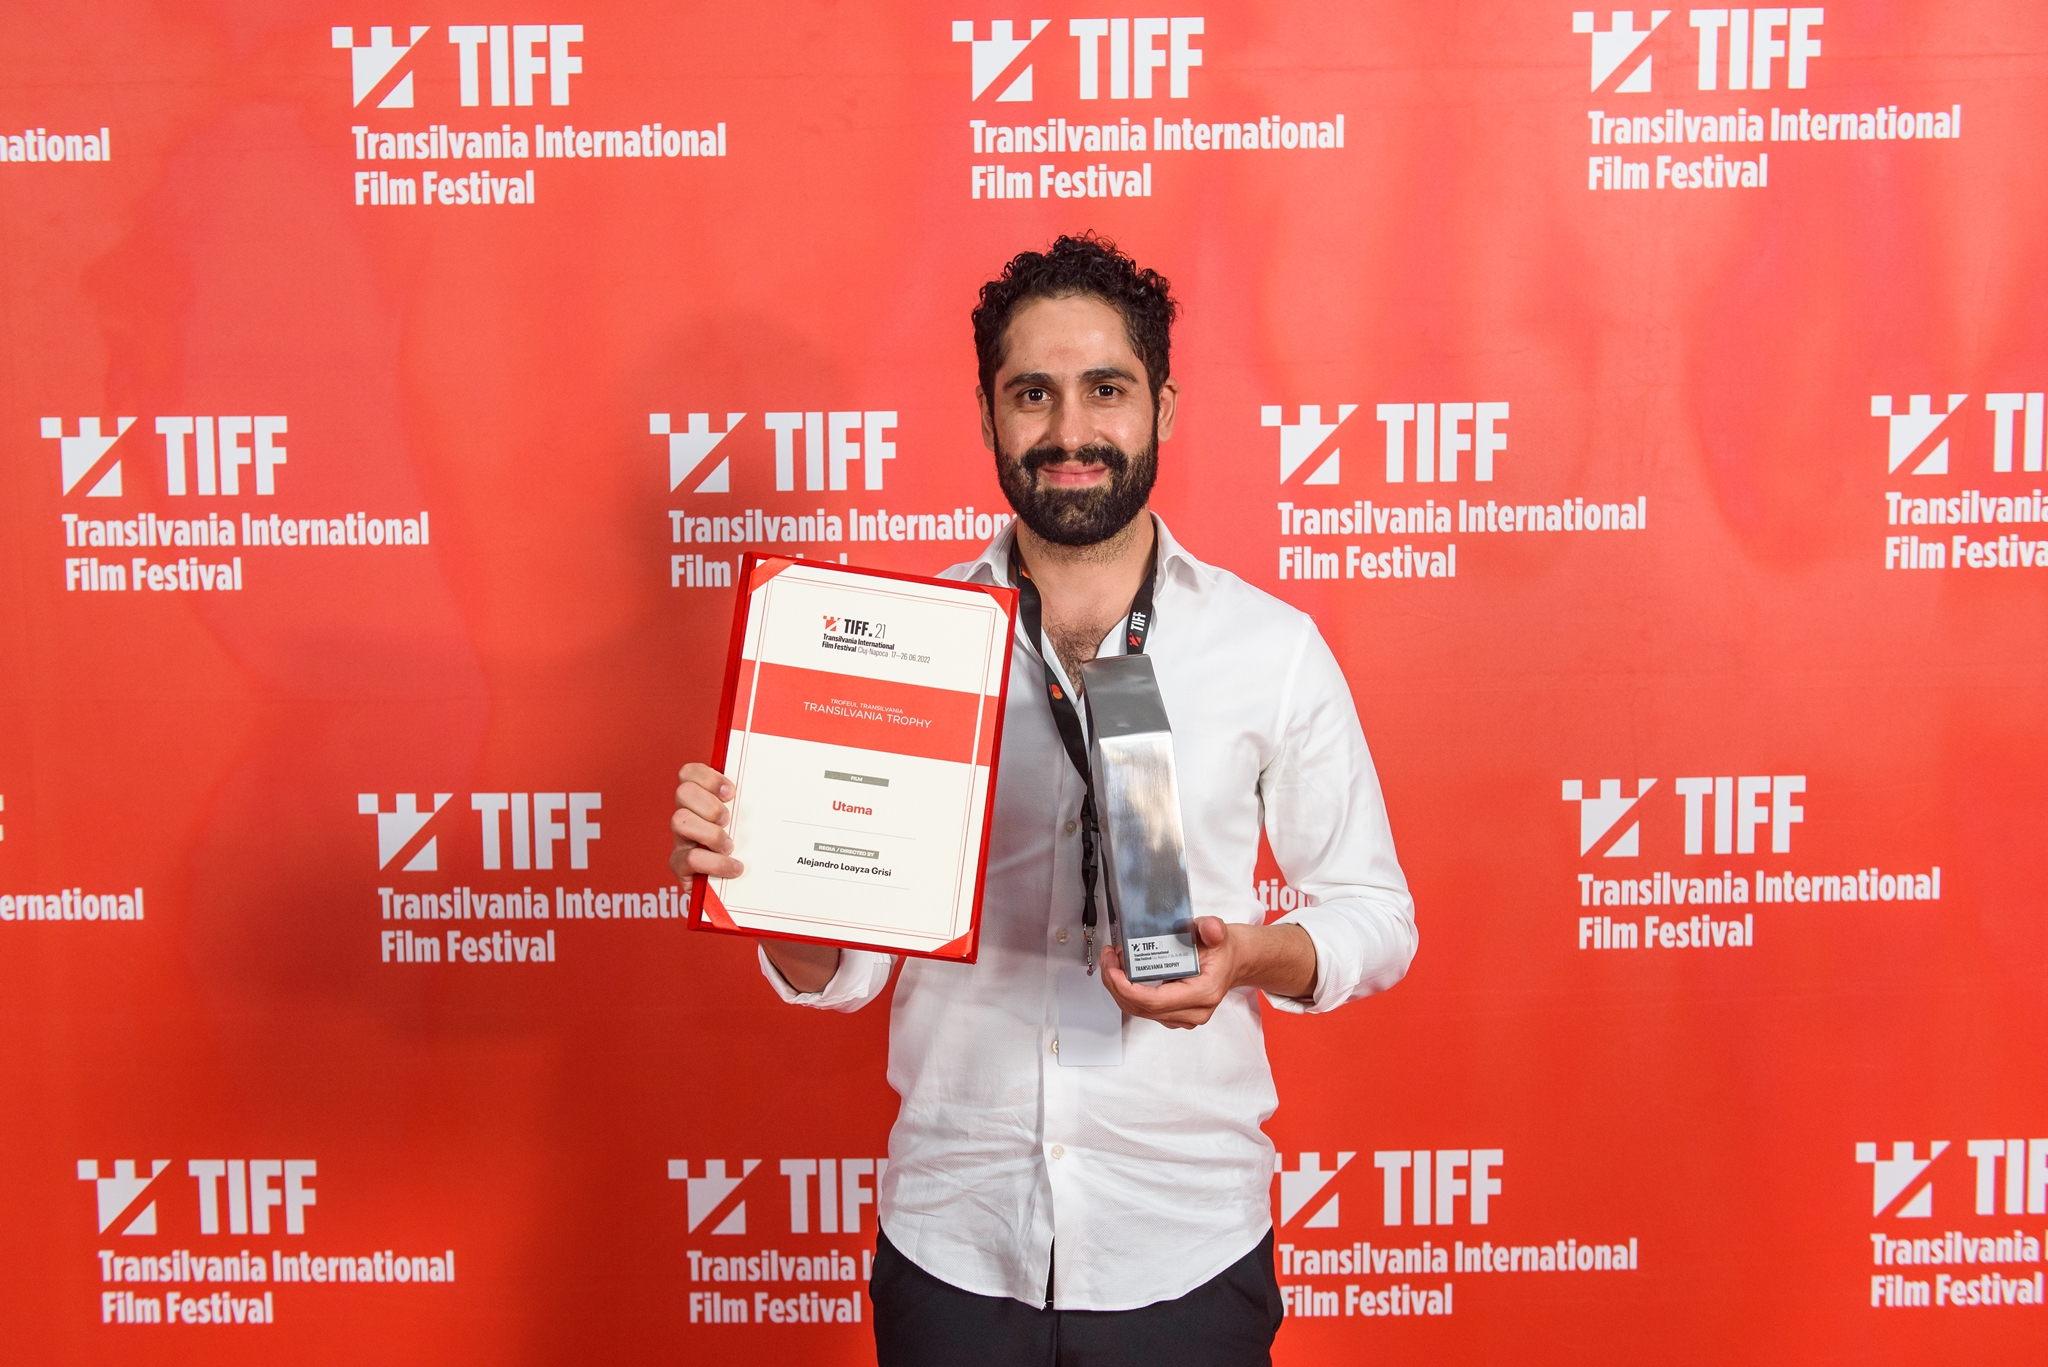 Bolivijos filmas laimėjo Grand Prix Transilvanijos tarptautiniame kino festivalyje – TIFF21